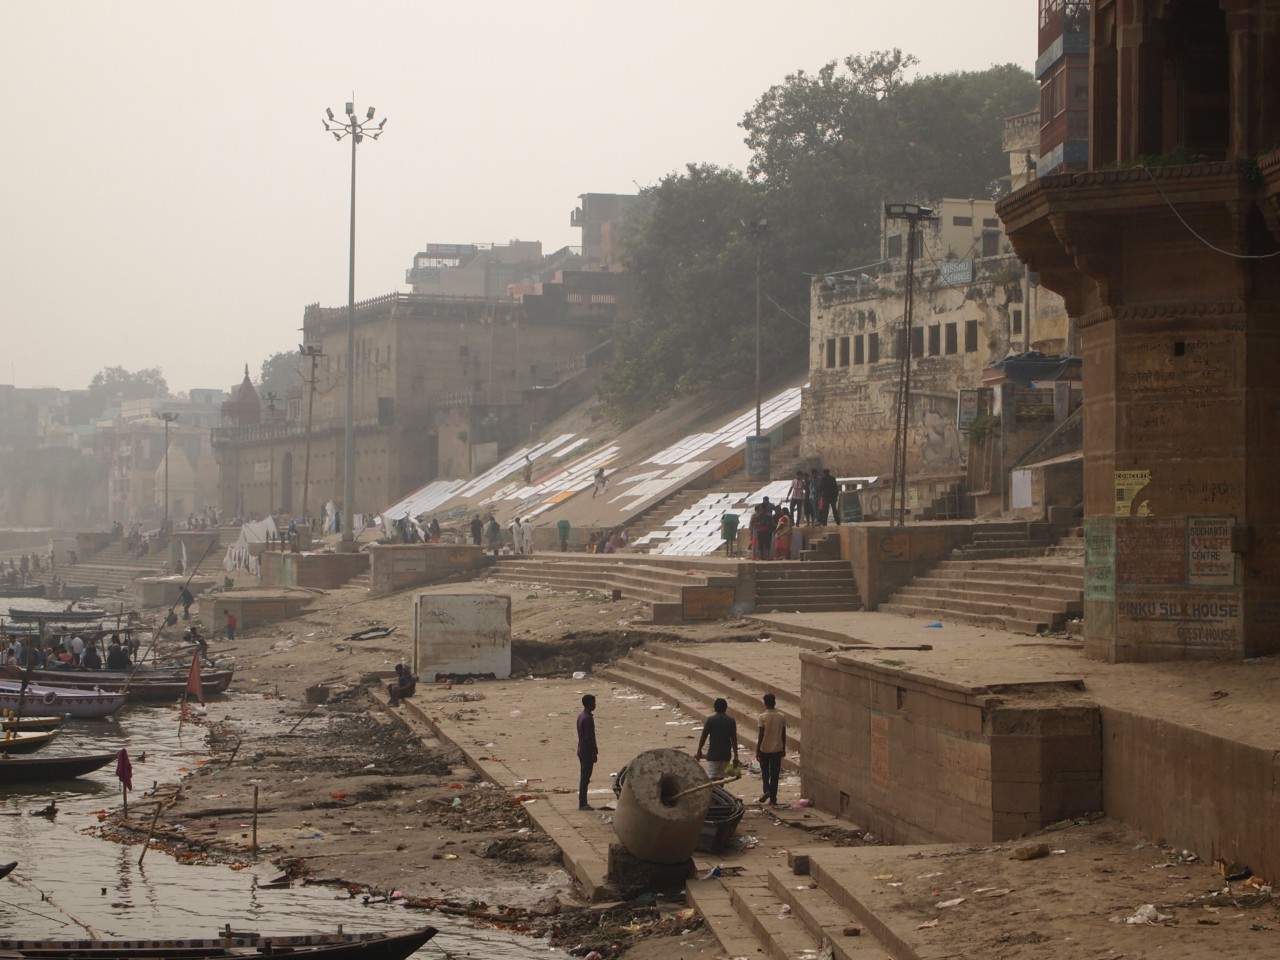 Am Ganges spielt sich sehr viel ab. Die Ghats rauf und runter zu gehen hat bei uns fast 10 Stunden gedauert, da so viel passiert ist und man mit sehr vielen Leuten ins Gespräch kommt.